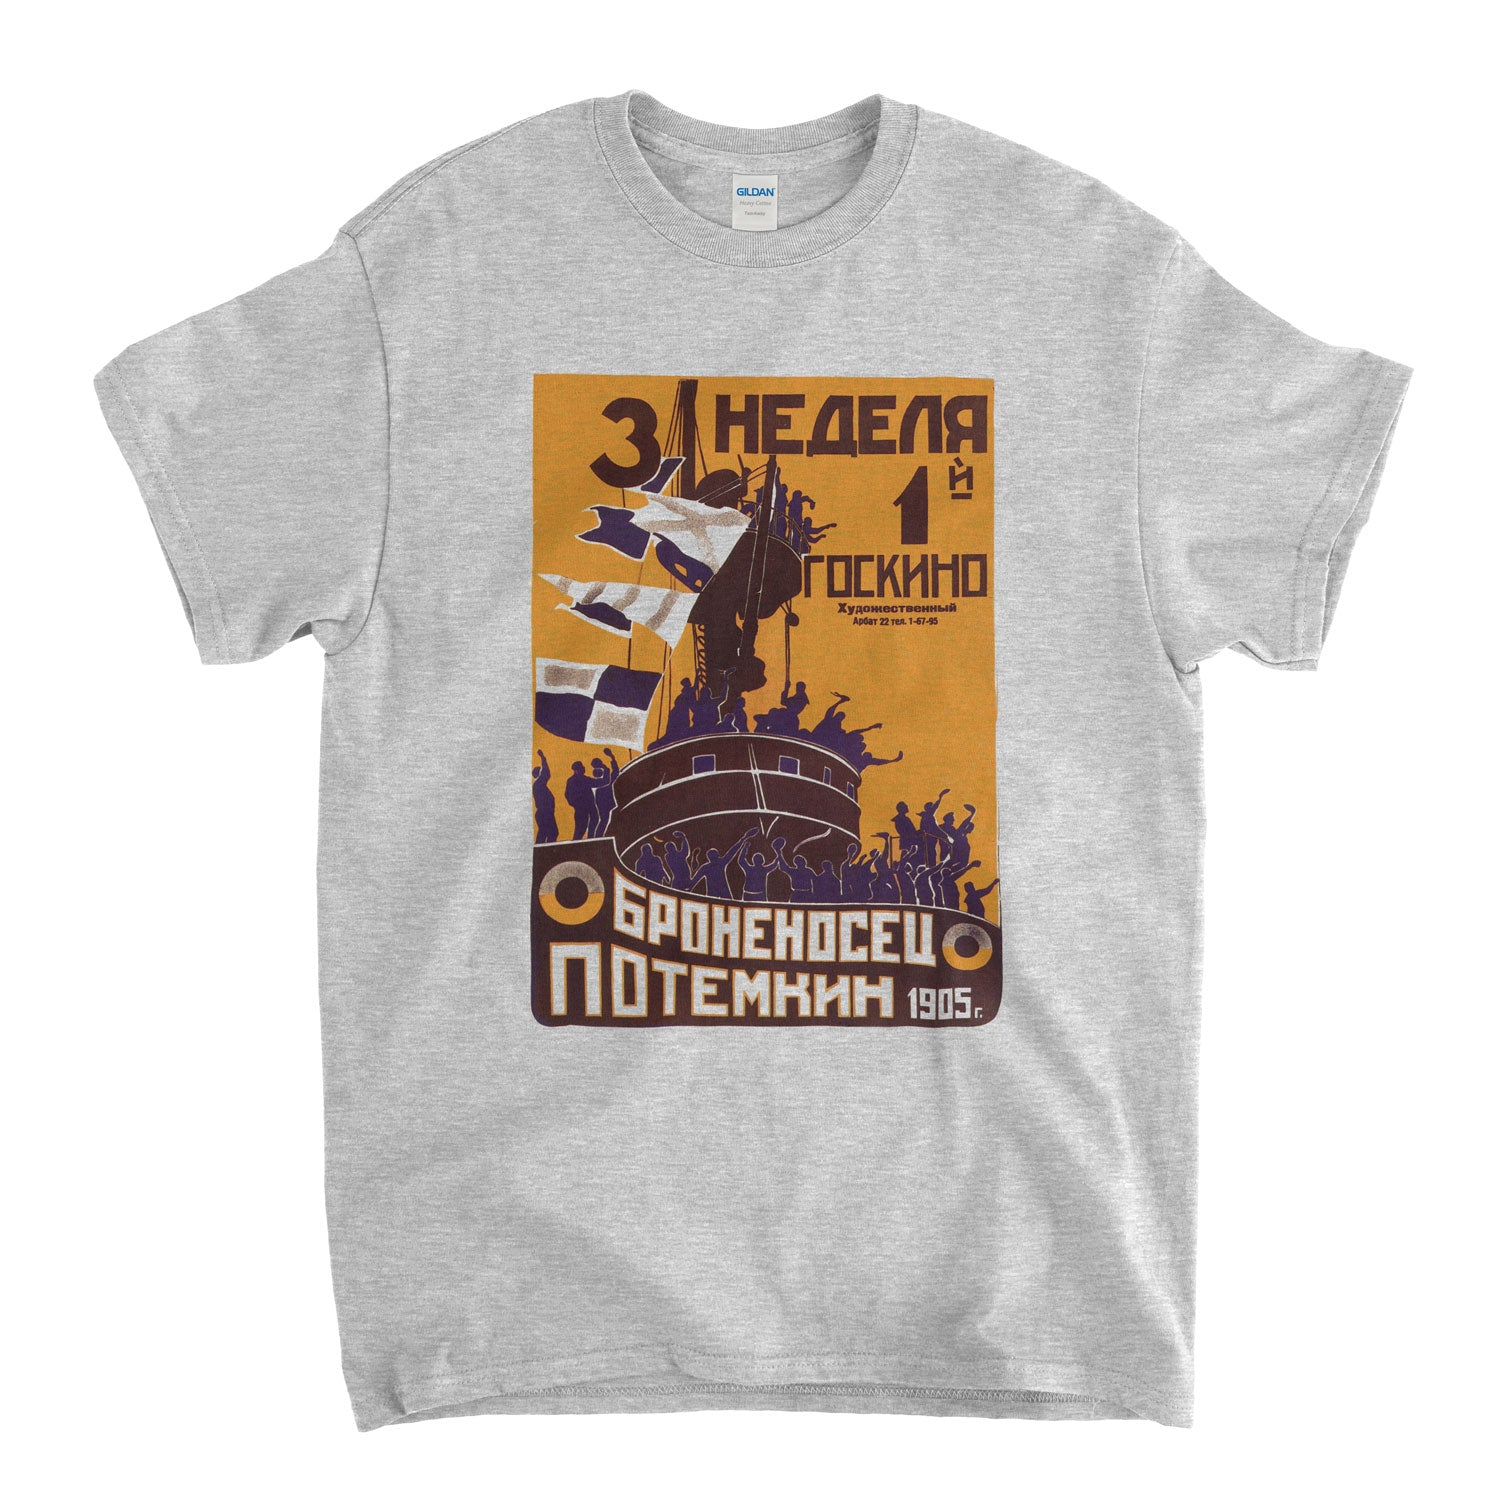 Battleship Potempkin T Shirt - Classic Soviet Movie Poster Design Old Skool Hooligans